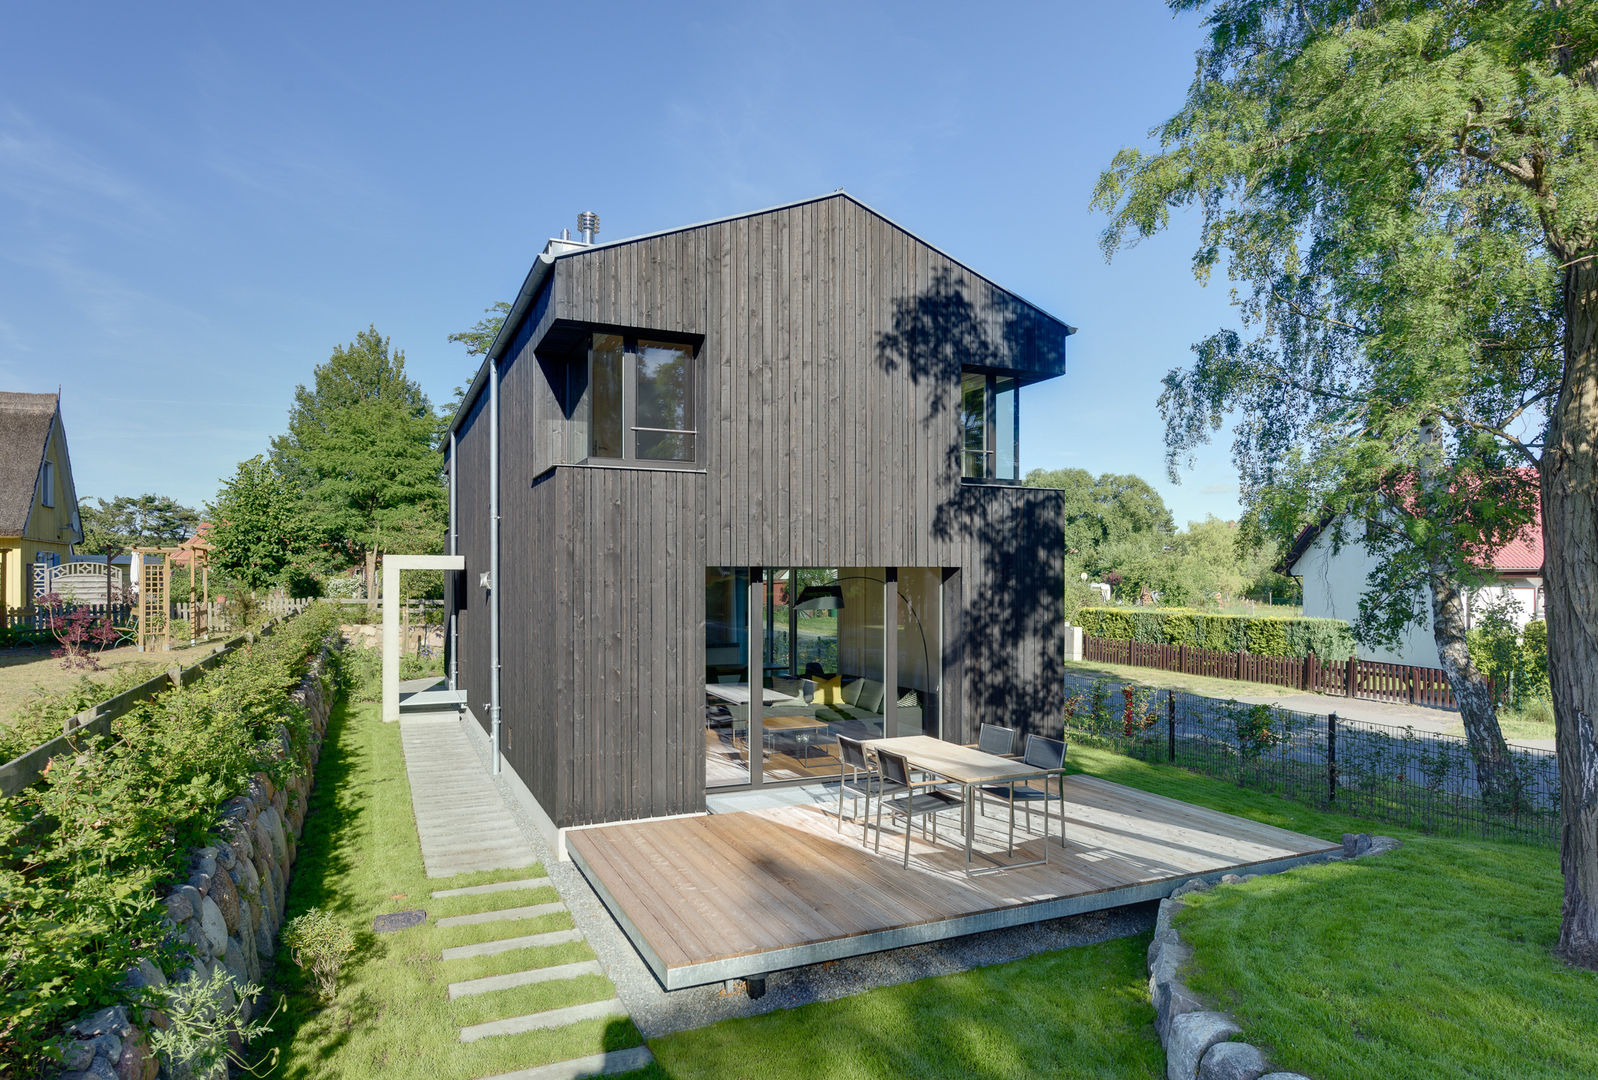 Modernes Ferienwohnhaus in Anlehnung an ein traditionelles Drempelhaus, Möhring Architekten Möhring Architekten Techos a dos aguas